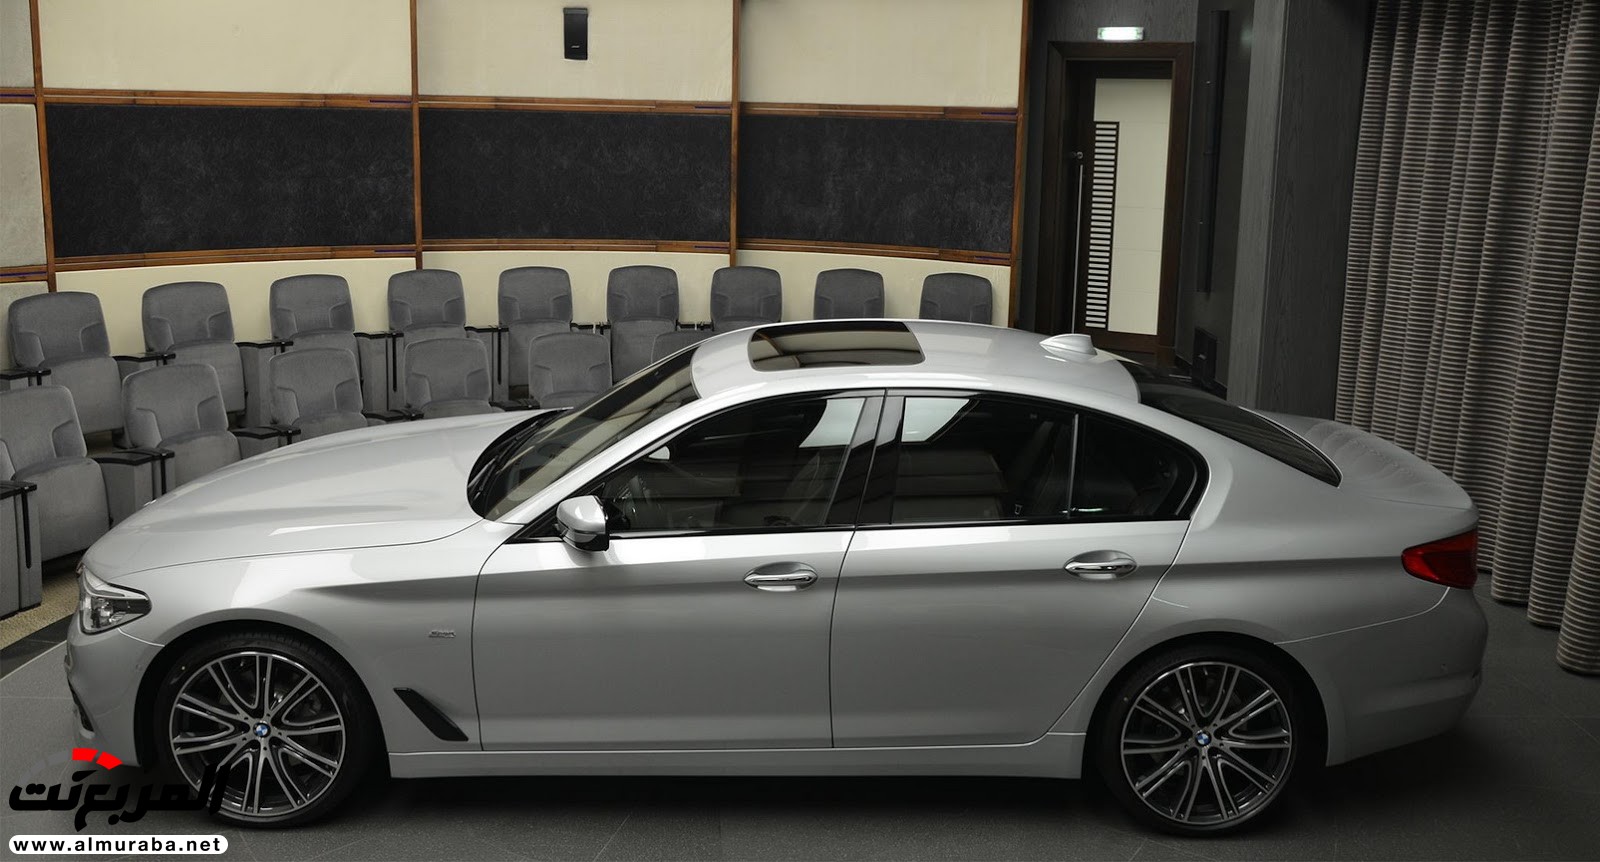 "بي إم دبليو" 540i الجديدة كلياً بتعديلات سبورت لاين معروضة بأبو ظبي BMW 18